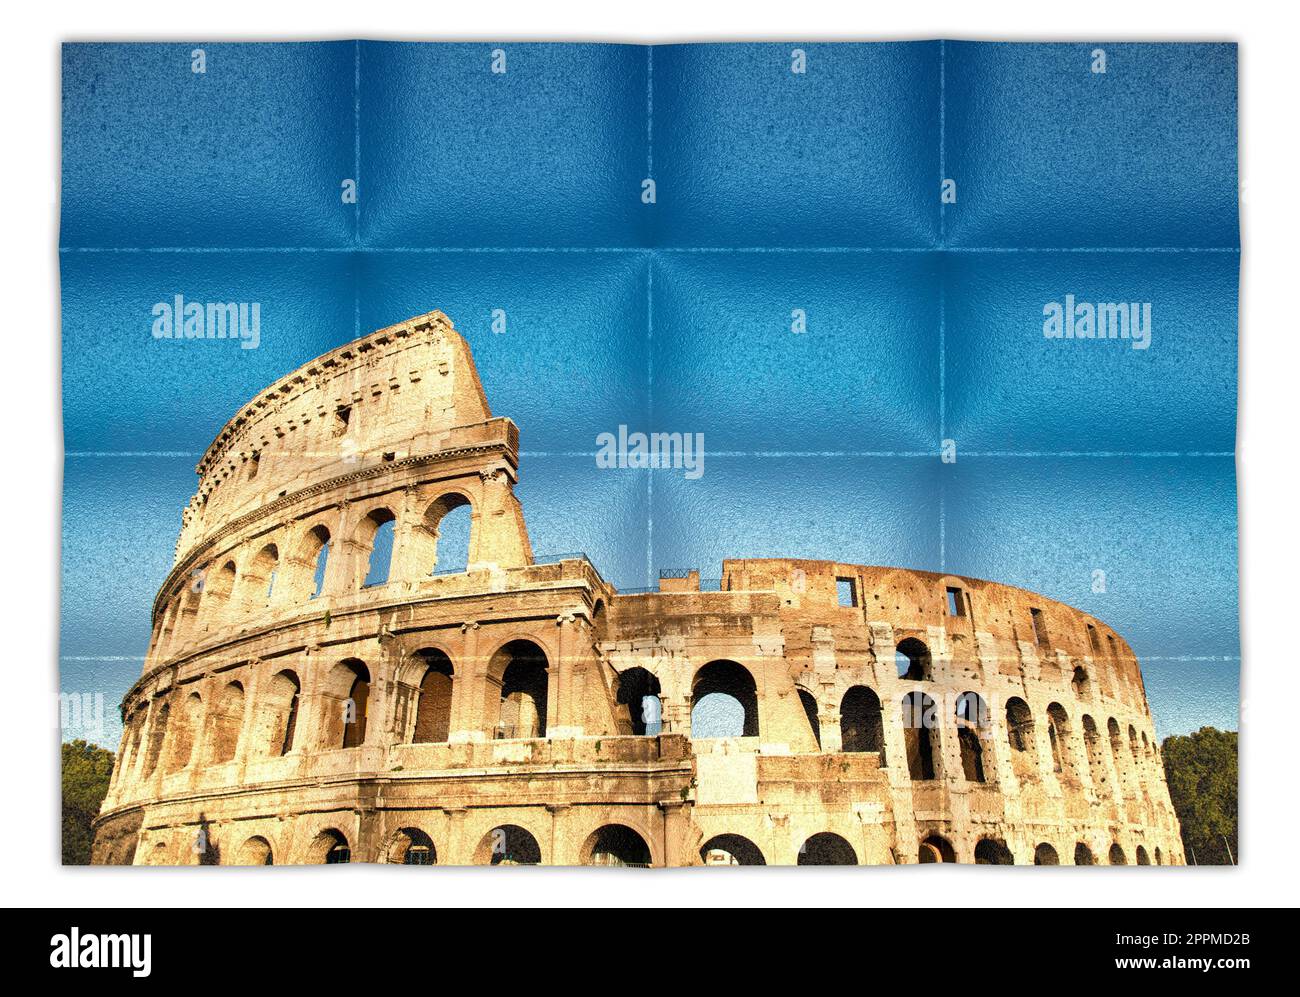 Italien, Rom - römisches Kolosseum mit blauem Himmel, das berühmteste italienische Wahrzeichen. Stockfoto